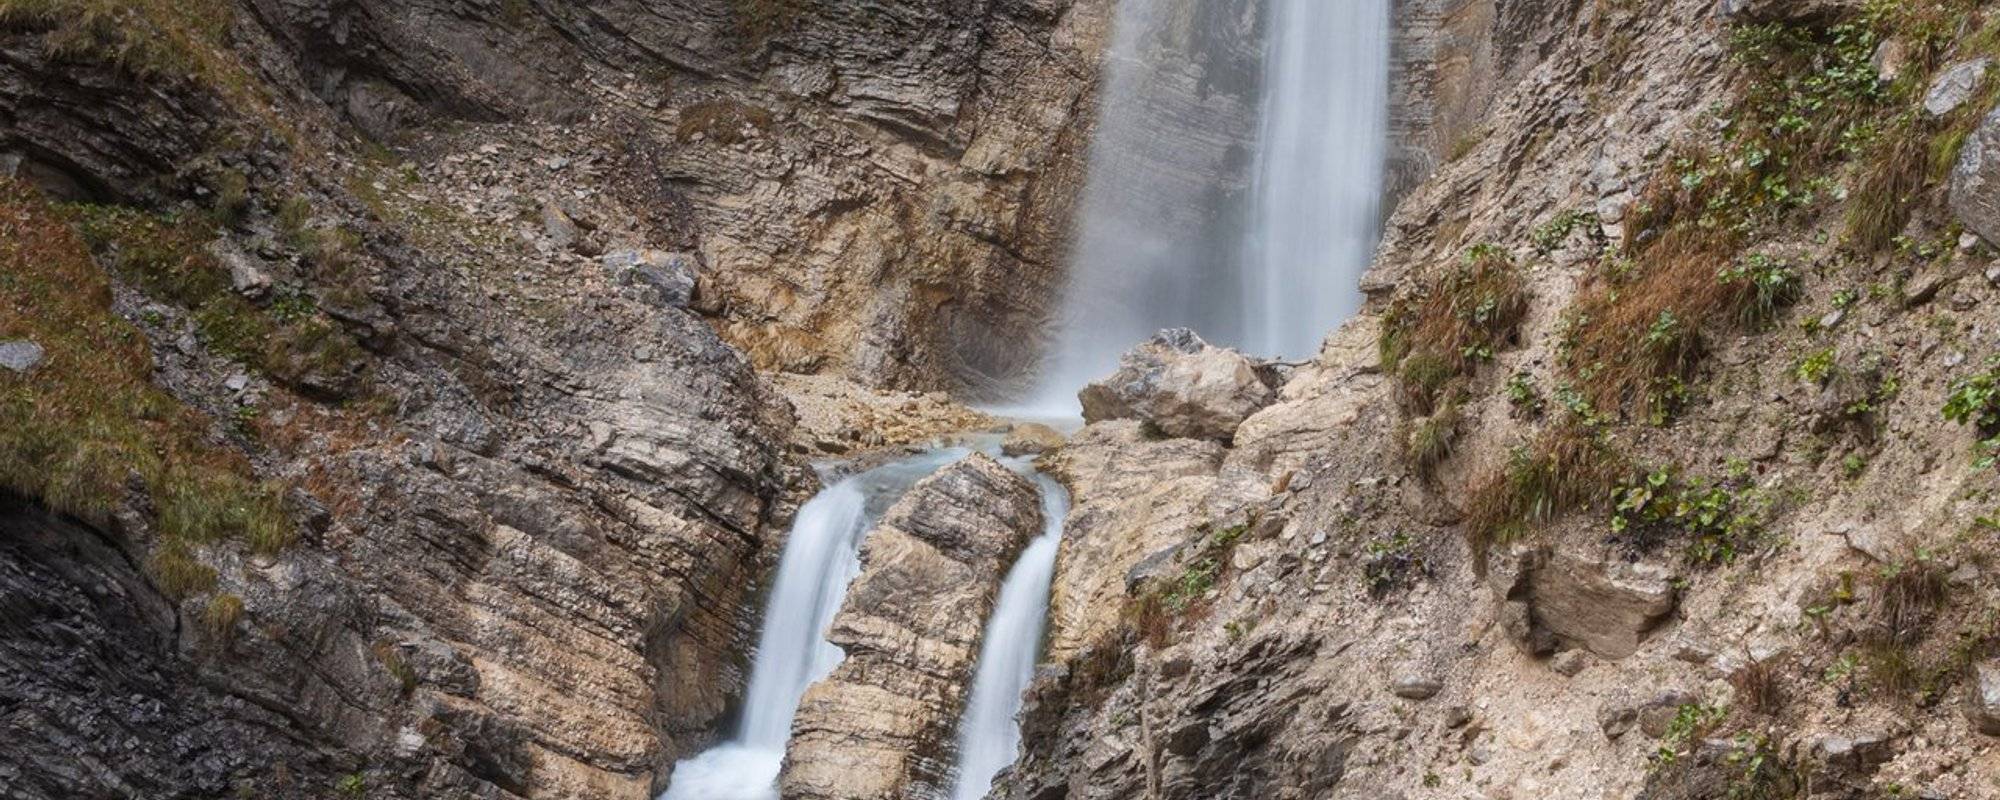 Martuljek Waterfalls / Martuljek Wasserfälle (Slovenia)